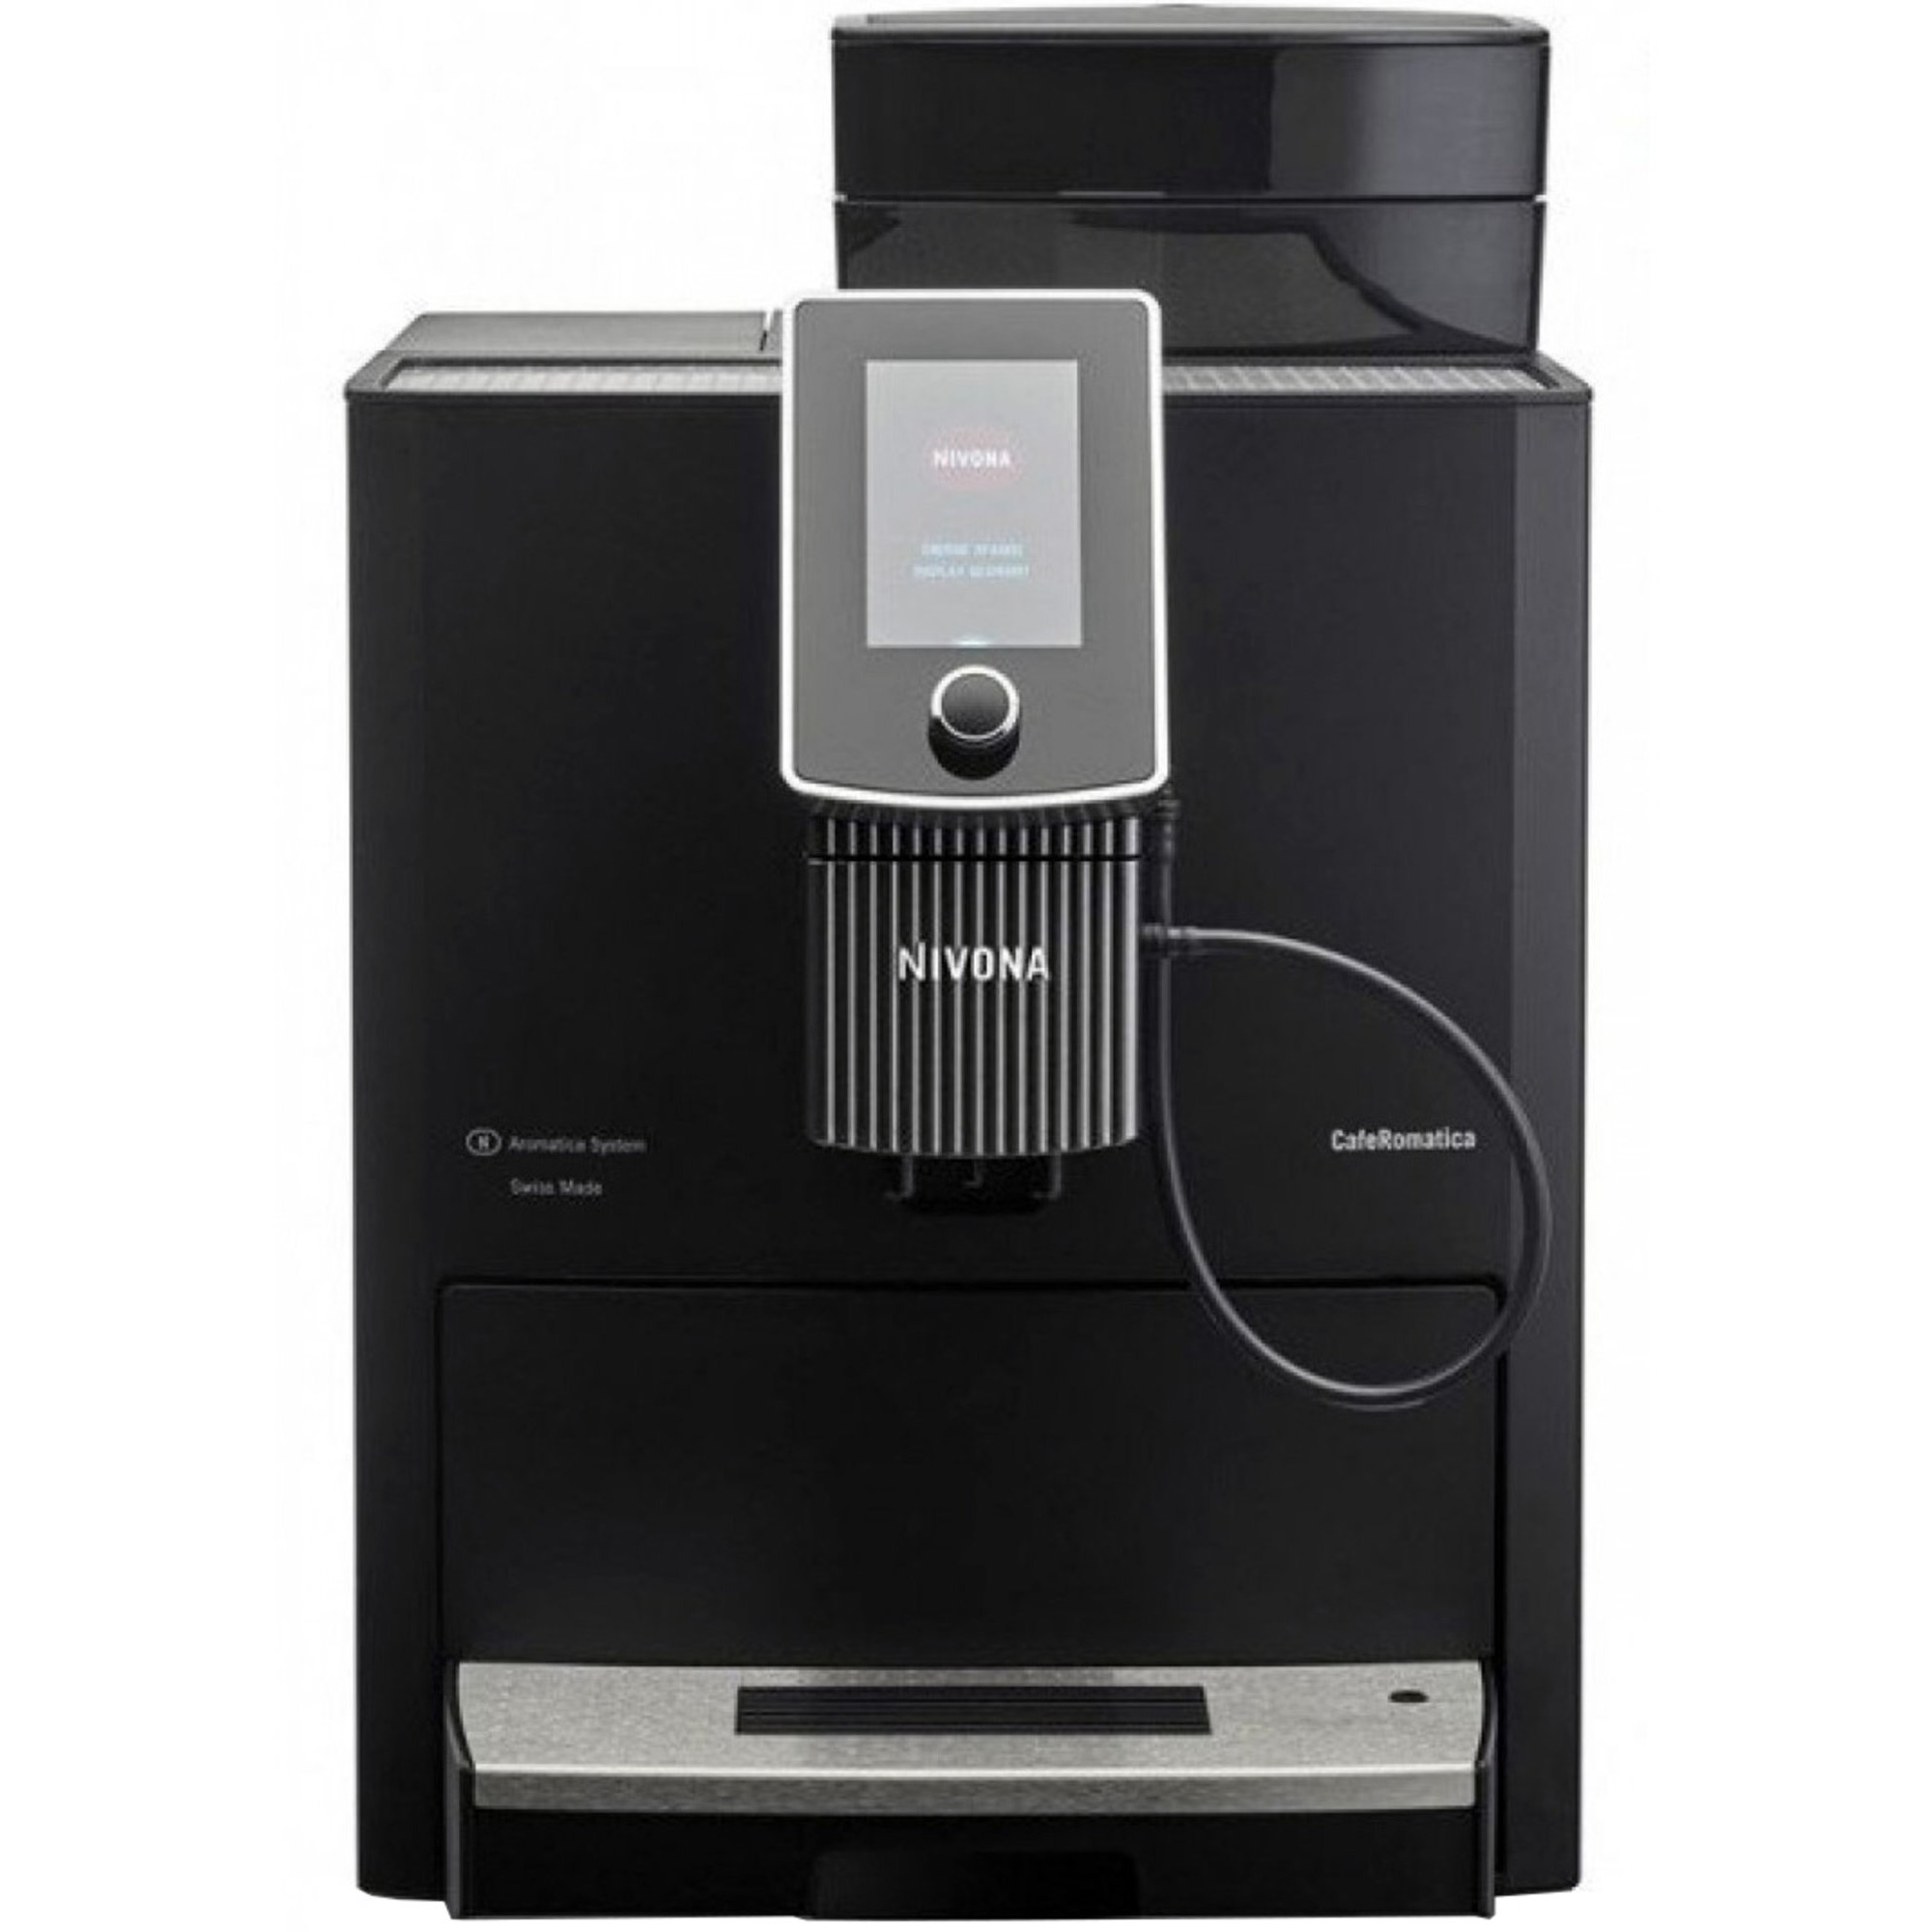 Nivona CafeRomatica 1030 espressomaskine